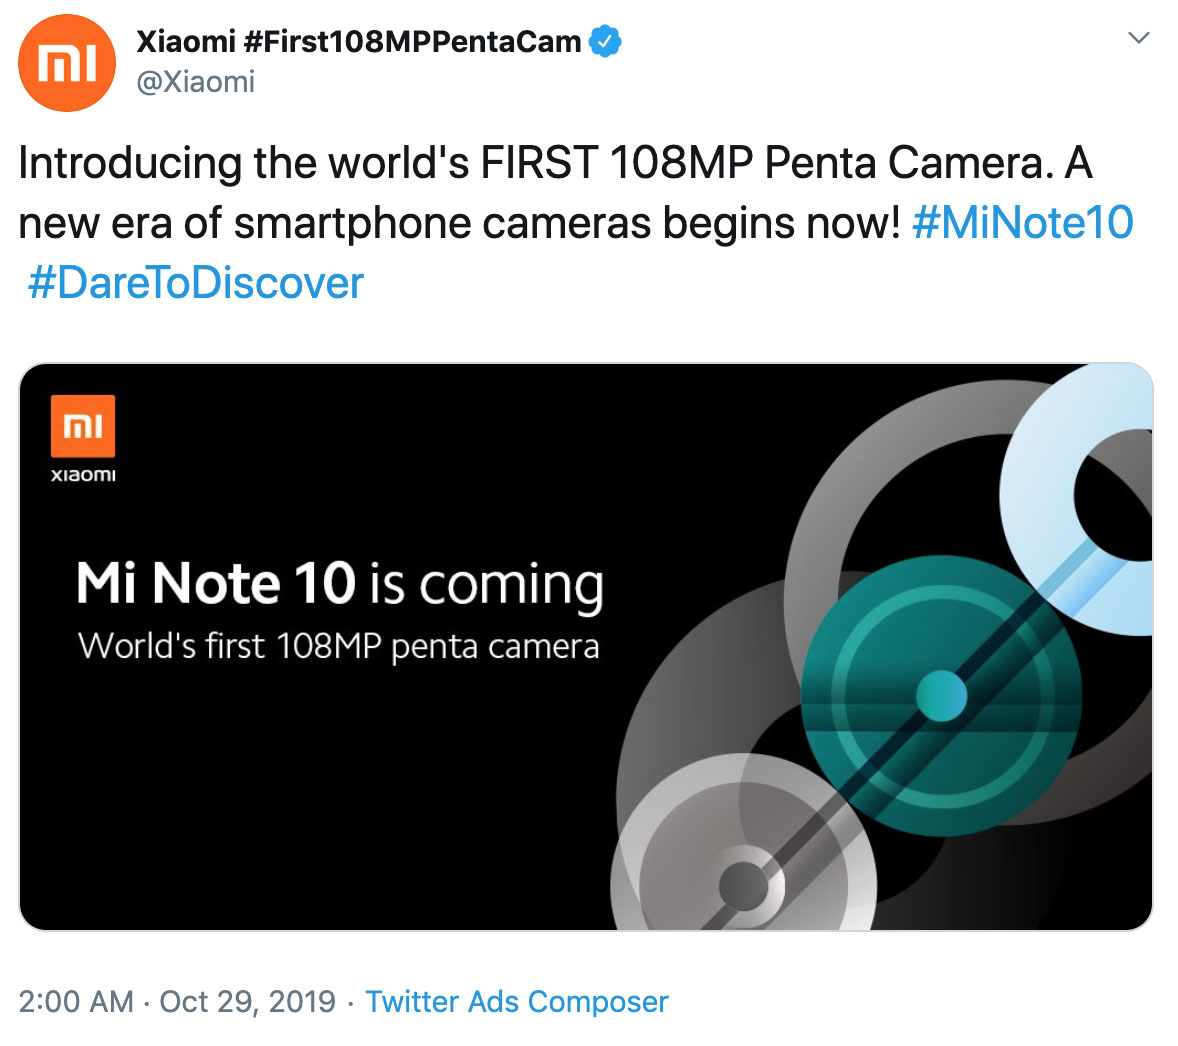 Xiaomi tung teaser
xác nhận sẽ ra mắt Mi Note 10 với cụm 5 camera, sử dụng cảm
biến khủng 108MP